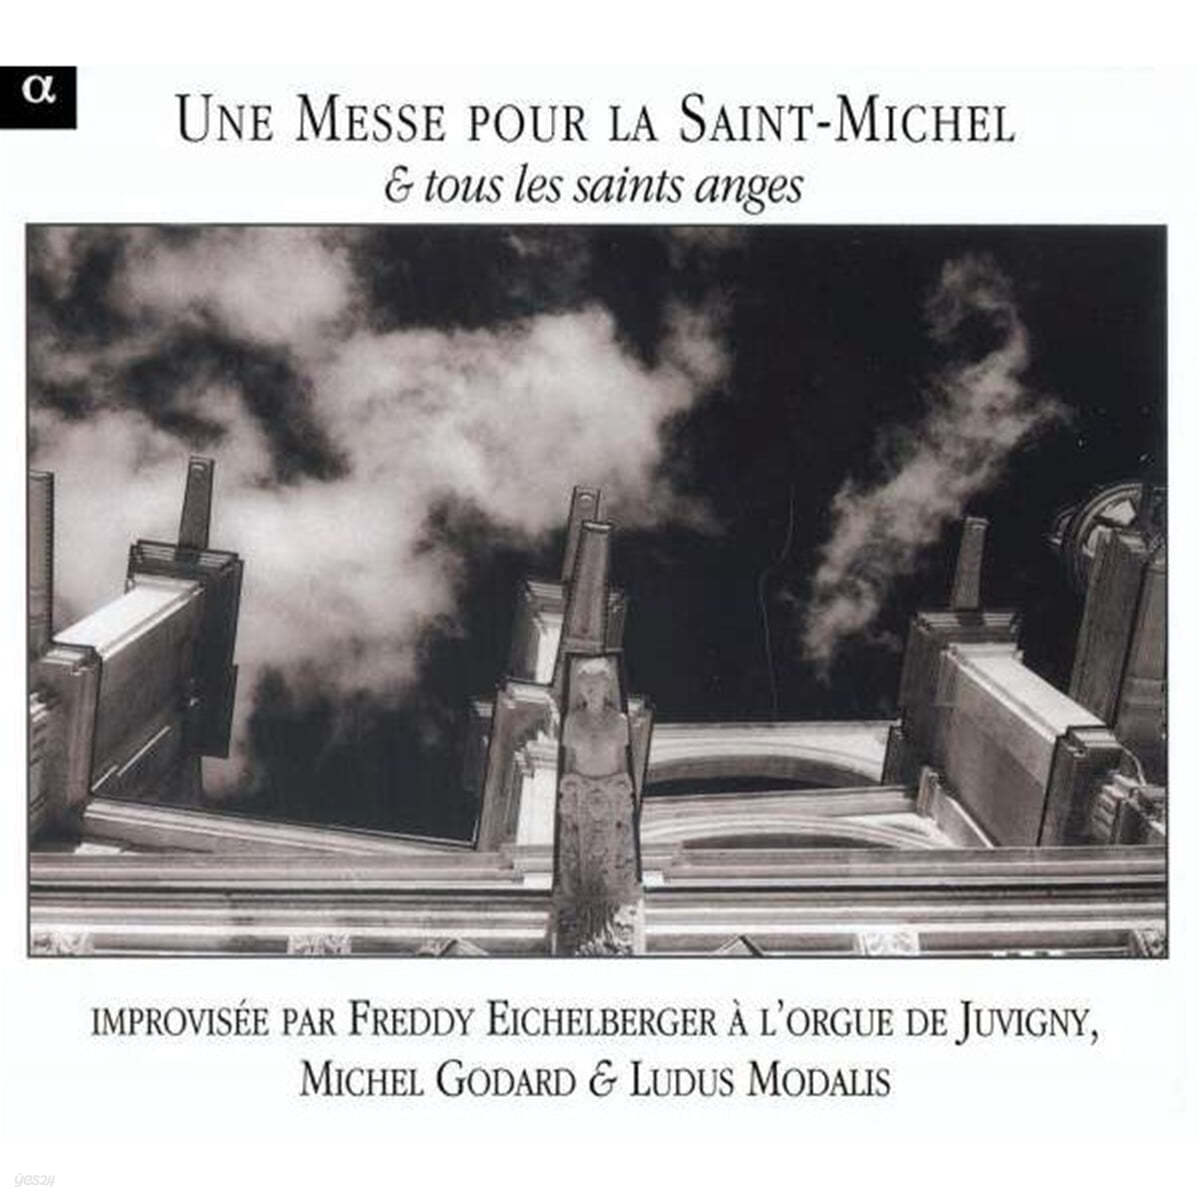 Michel Godard / Ludus Modalis 단성 성가 모음집 (Une Messe Pour La Saint-Michel & Tous Les Saints Anges) 